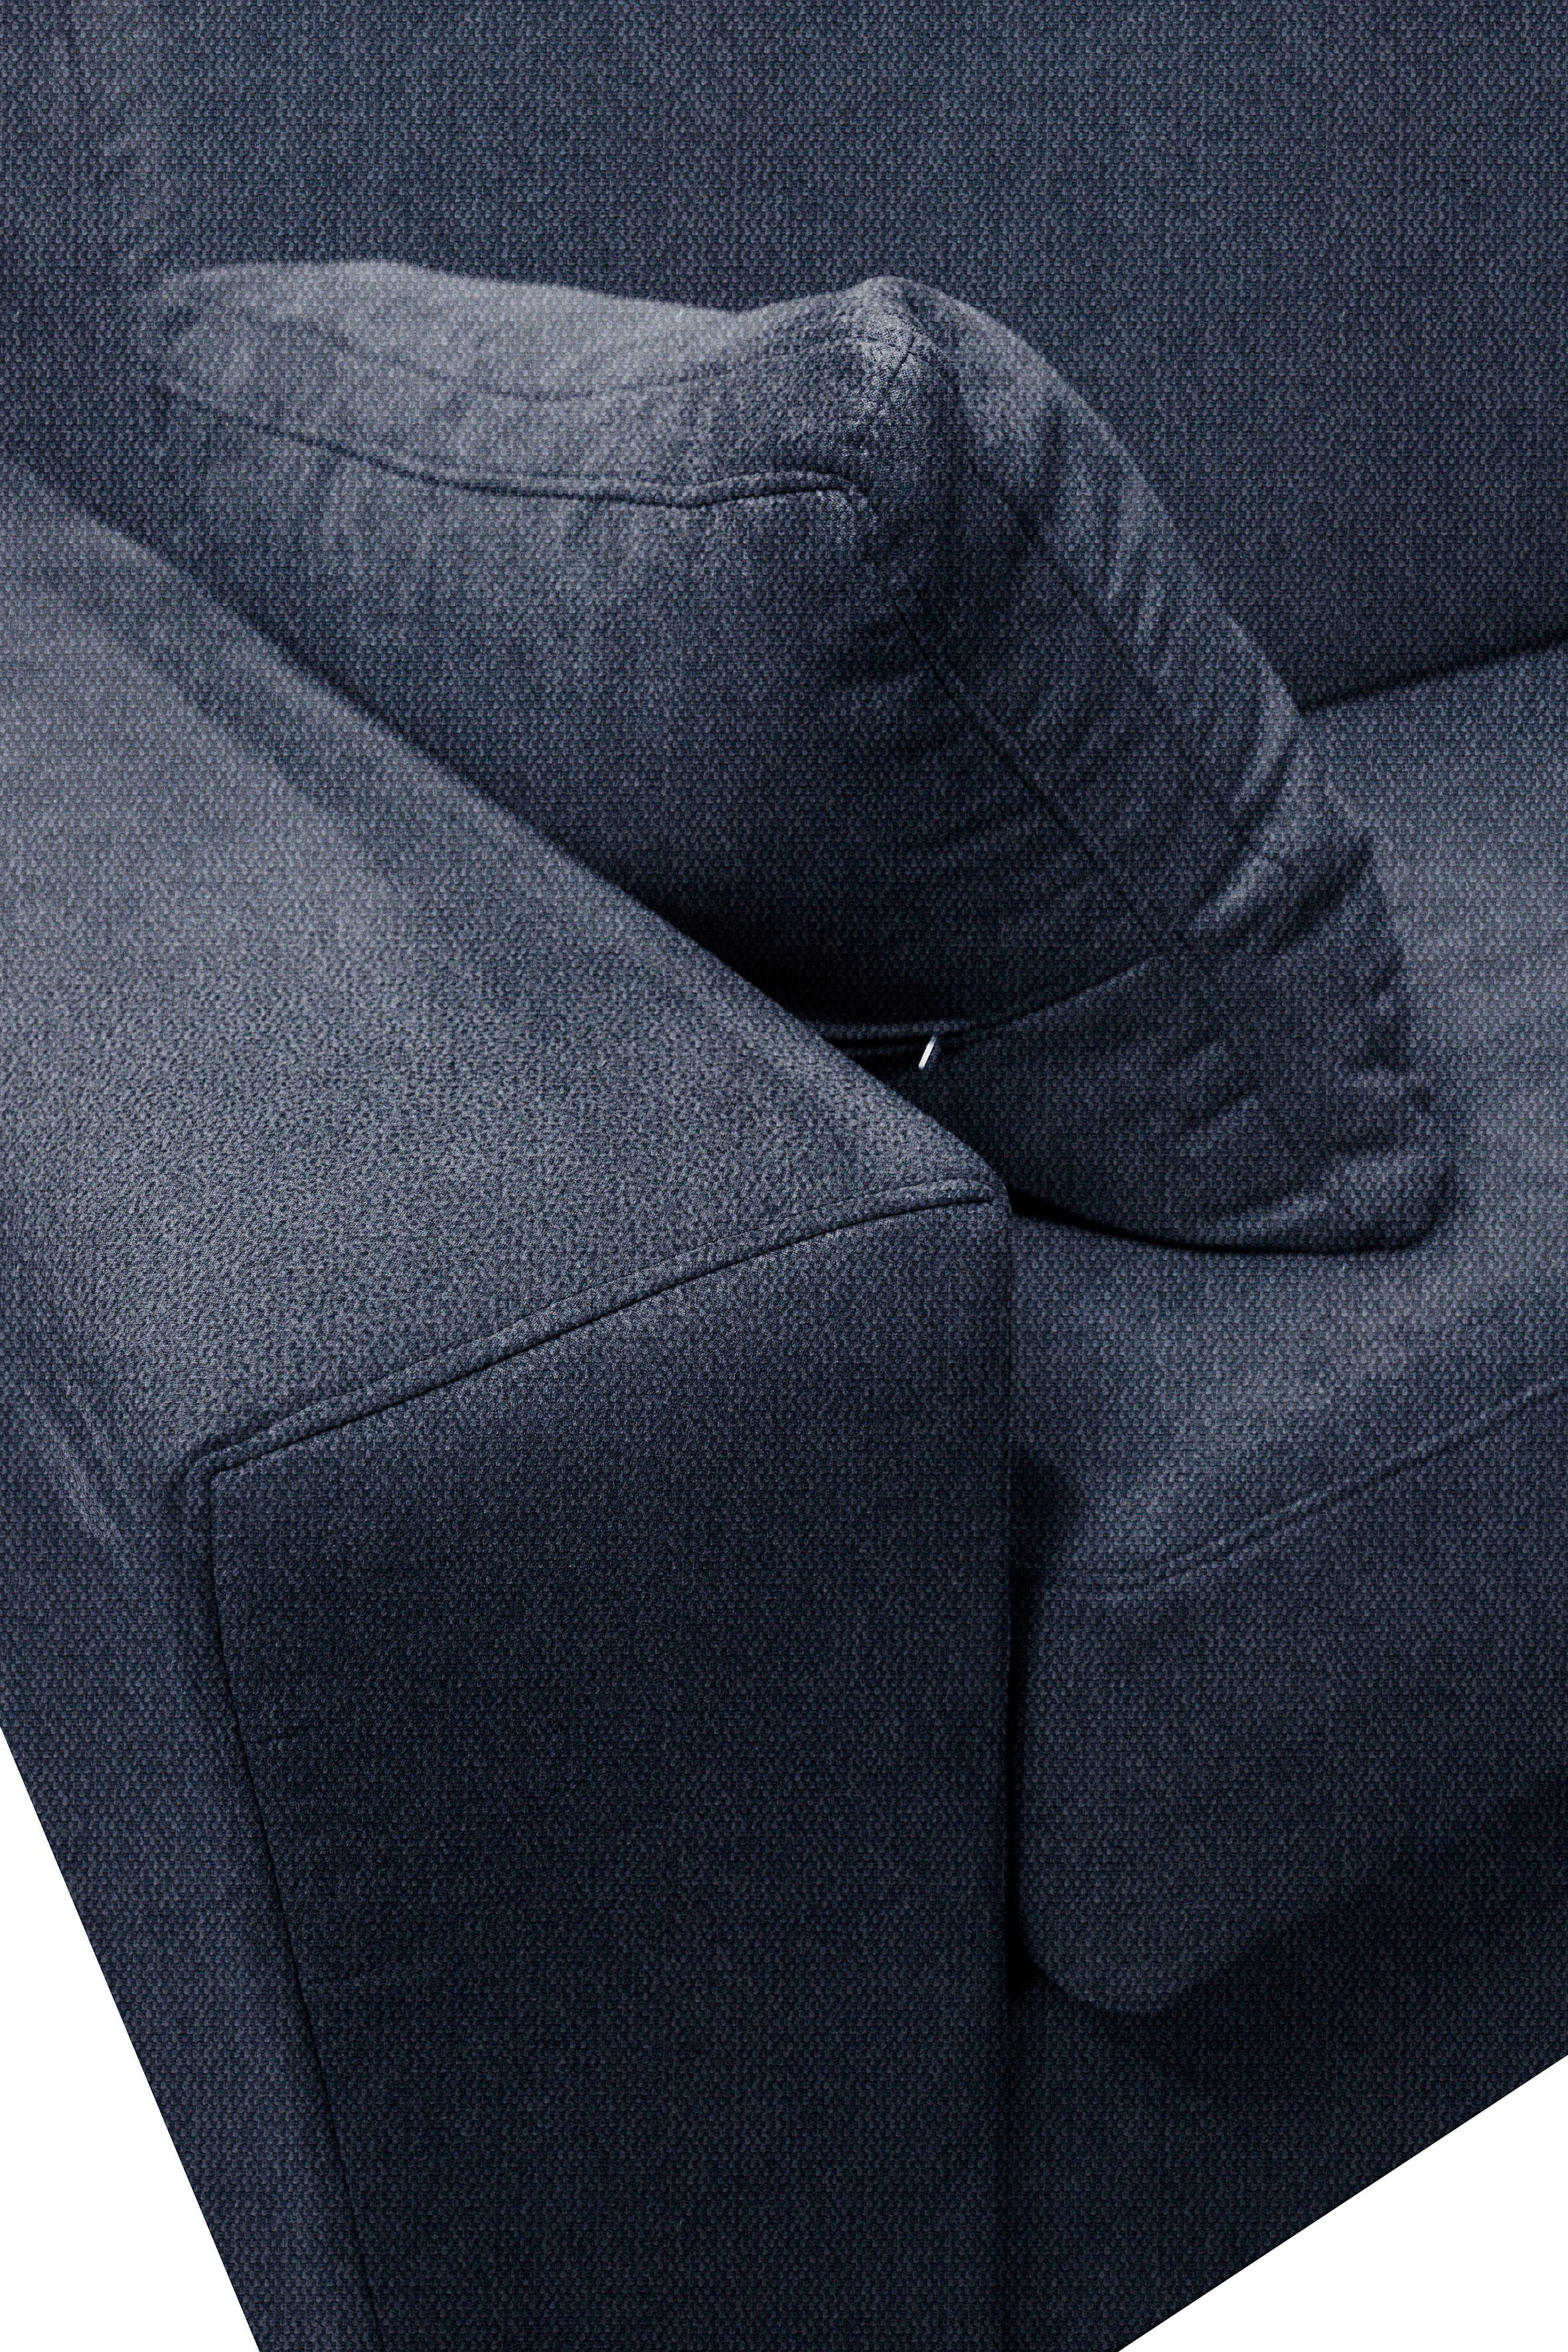 Dauerschlaffunktion, mit Unterfederung, Sessel Liegemaße ca Home 83x198 cm Roma, affaire